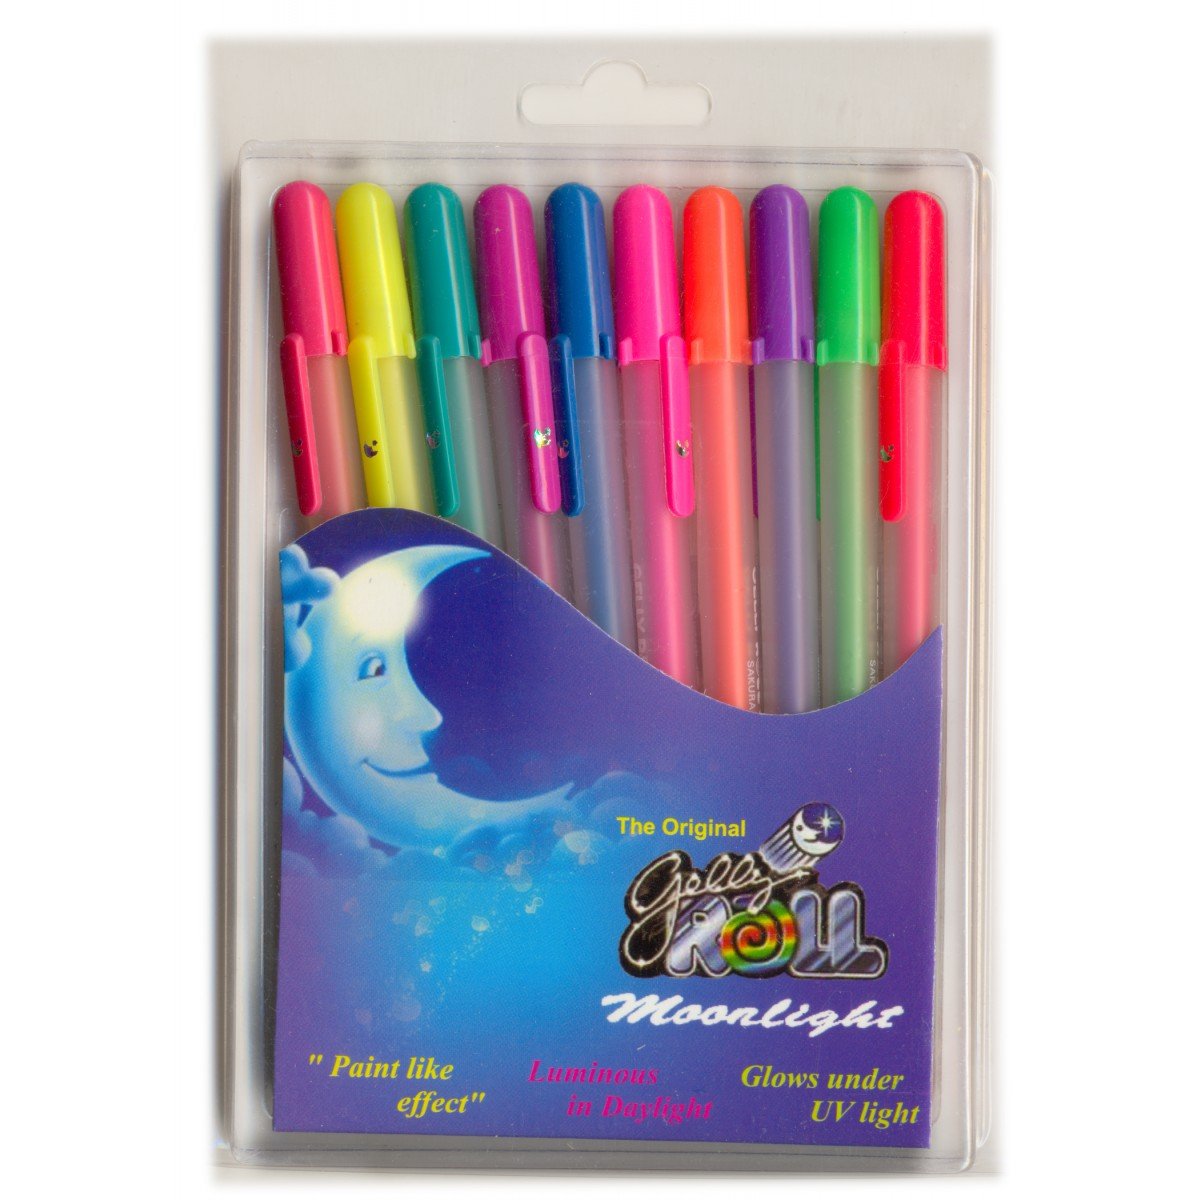 Sakura Gelly Roll Fluorescent Moonlight Pens